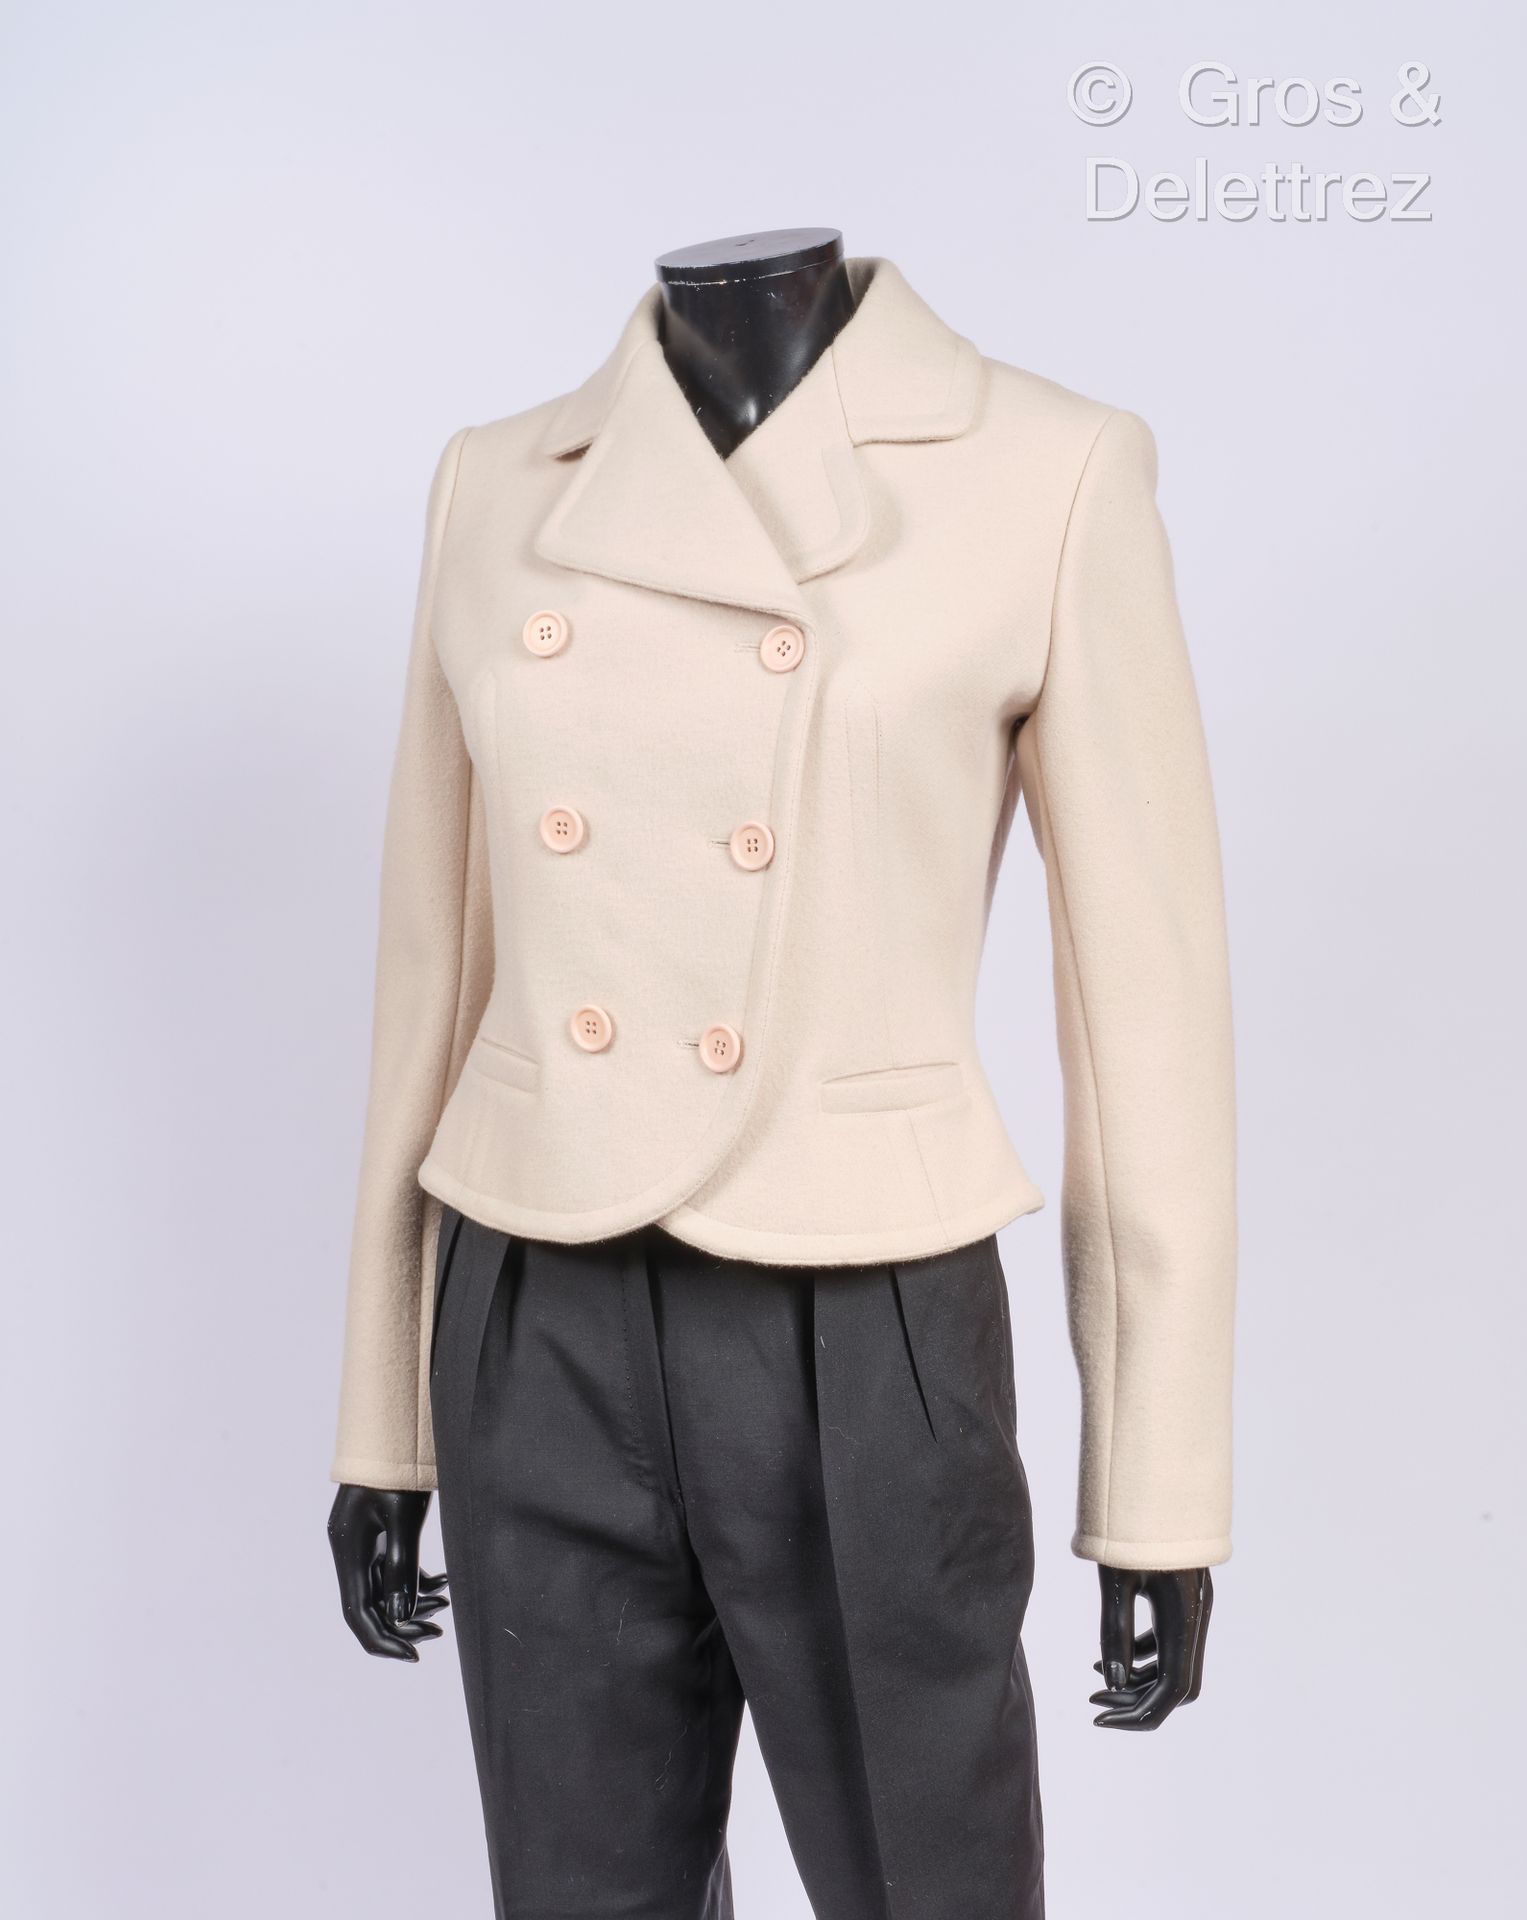 ALAÏA 2008年秋/冬系列 - "14h "款
象牙色羊毛短外套，有缝线和镂空效果，凹槽领，双排扣，长袖，两个口袋。裸色标签和图案。T. 38.